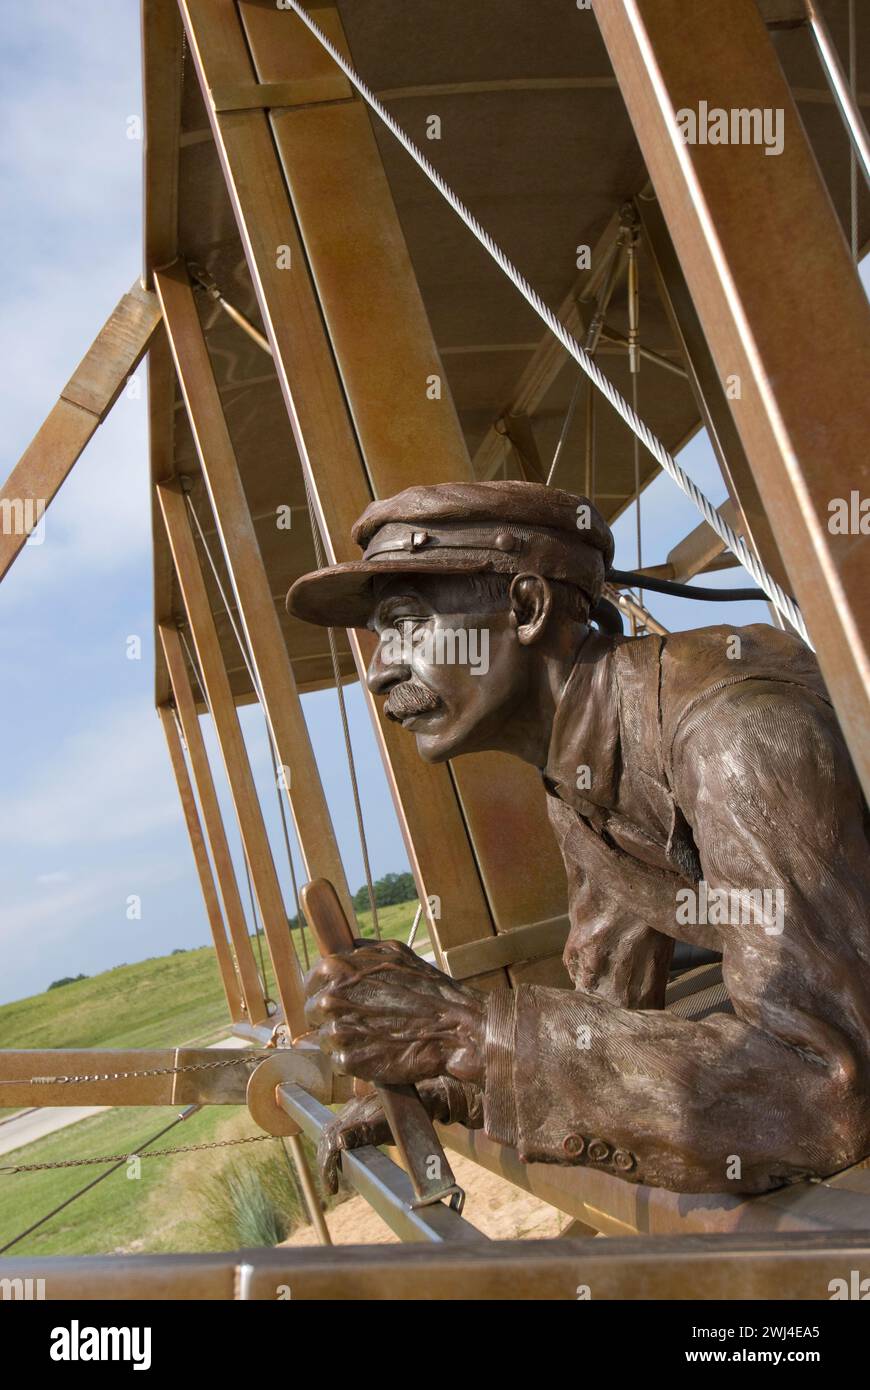 Orville Wright volò il Wright Brother's Flyer che volò per 12 secondi nel 17 dicembre 1903 per il primo volo a propulsione controllata al mondo Foto Stock